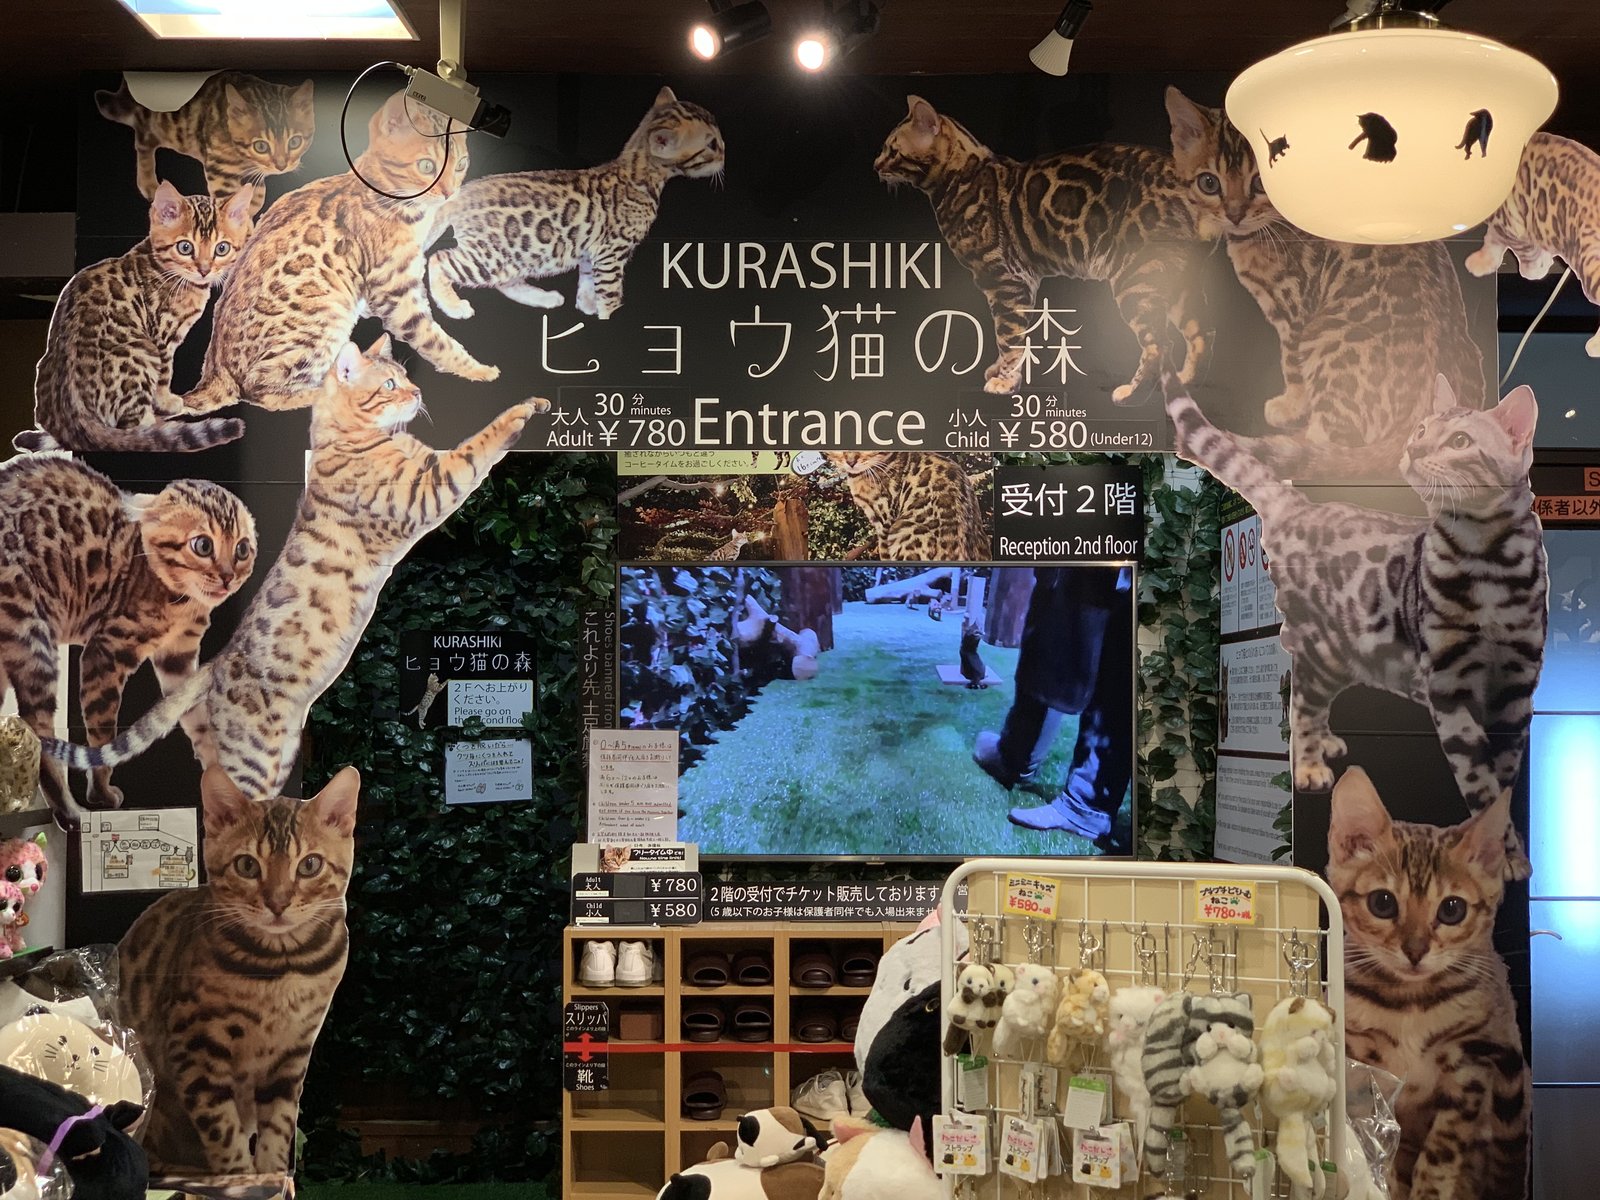 KURASHIKI ヒョウ猫の森